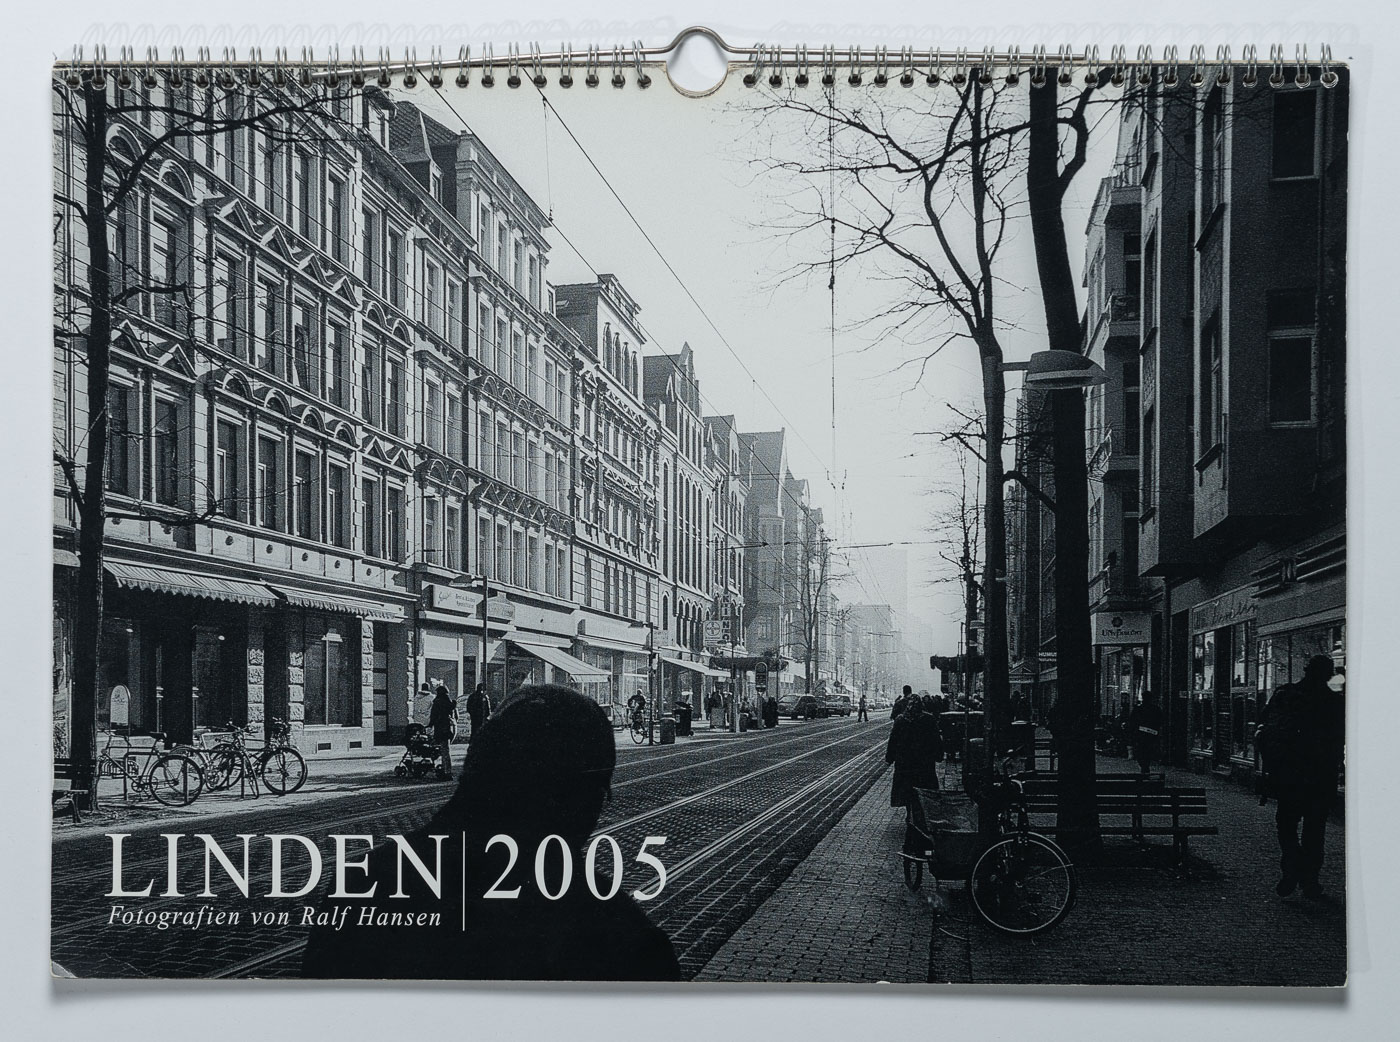 Lindenkalender LINDEN 2005